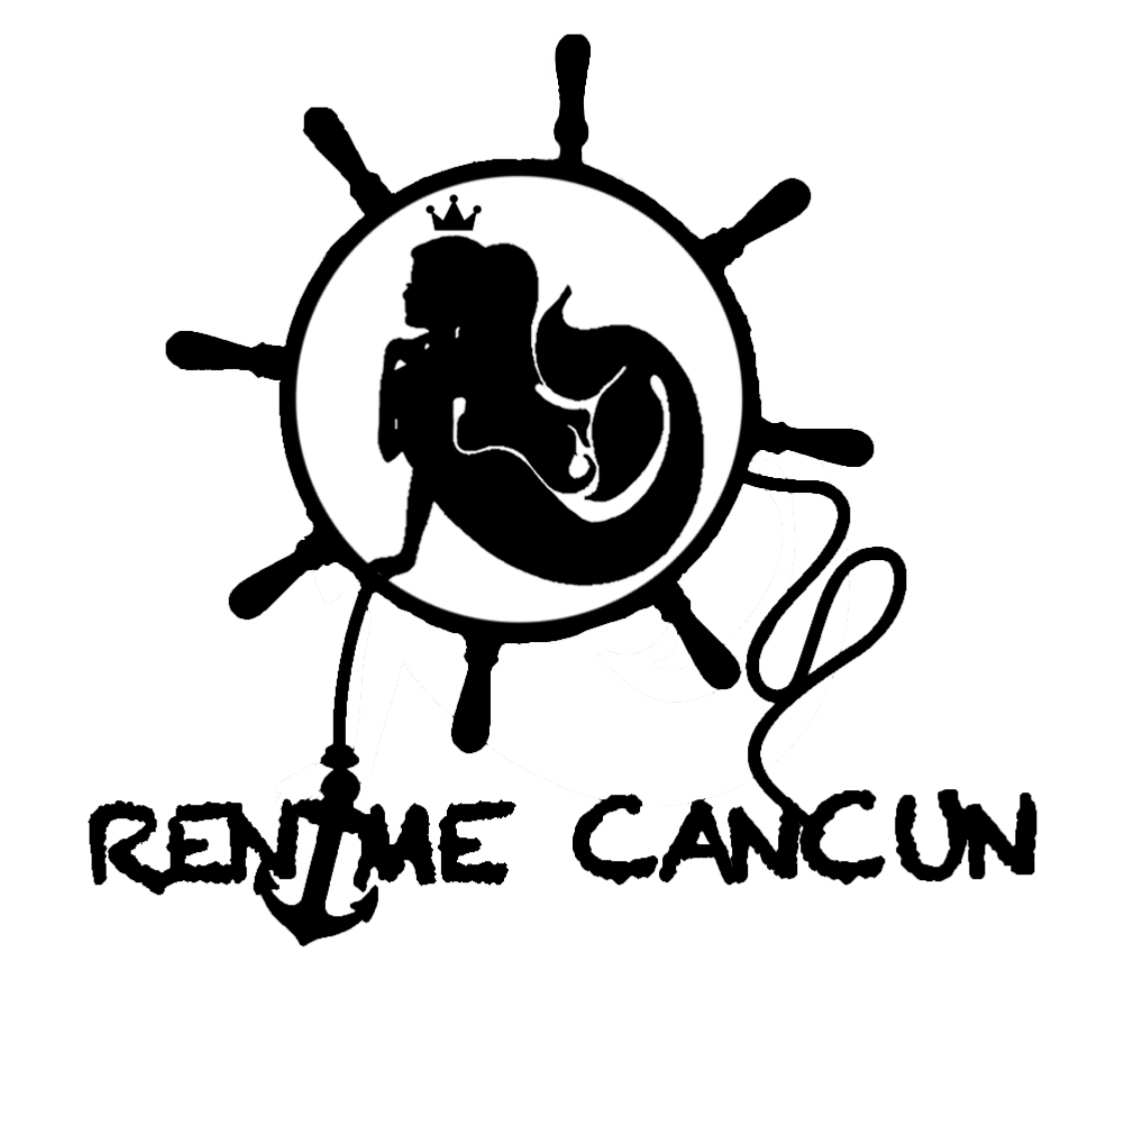 RentMe Cancun